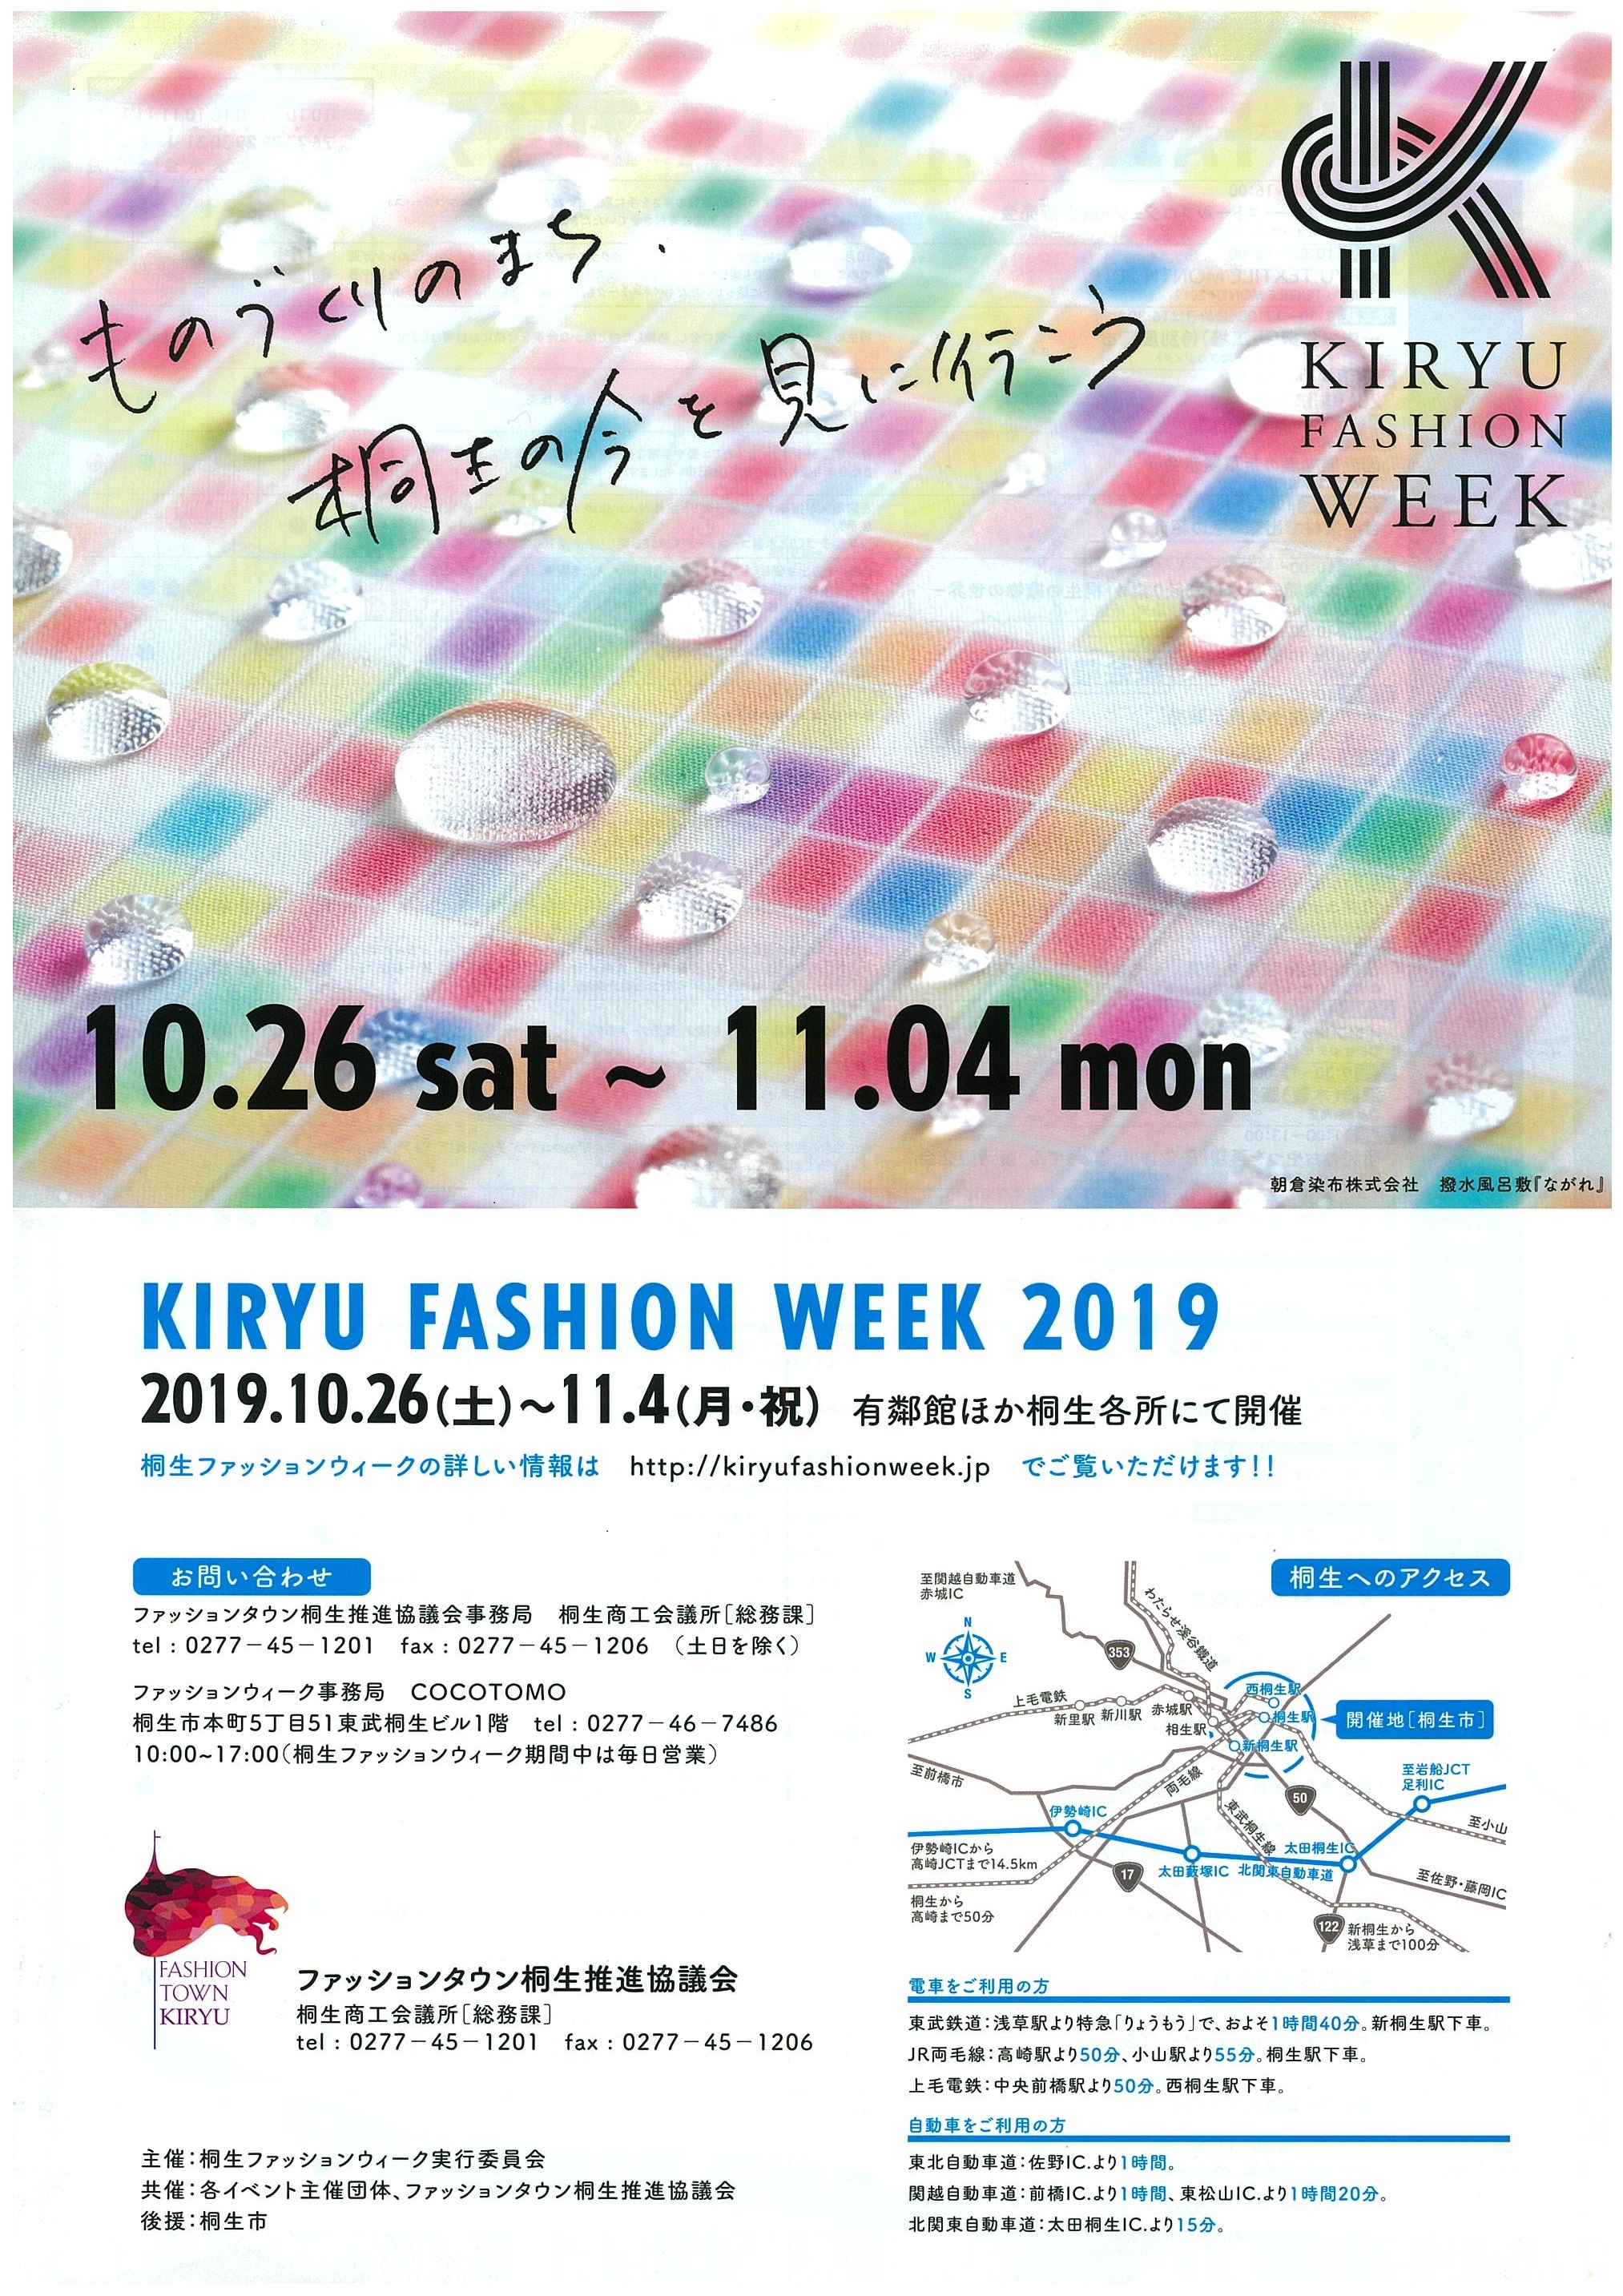 
桐生ファッションウィーク開幕
大川美術館も参加しています！
